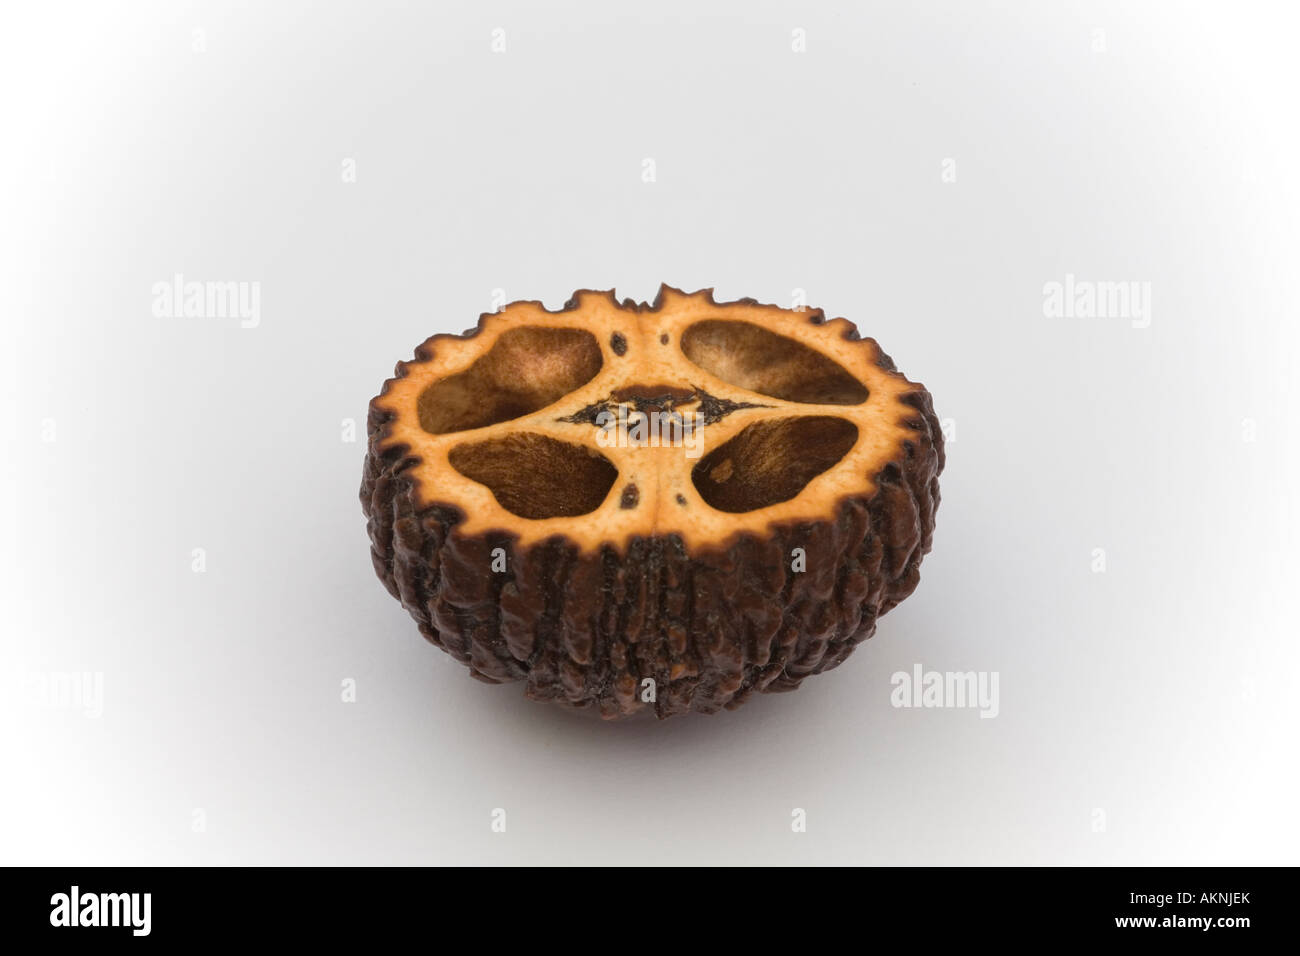 A cross section of a nut of the Black Walnut (Juglans nigra). Macrophotographie d'une coupe de noix de noyer noir (France). Stock Photo